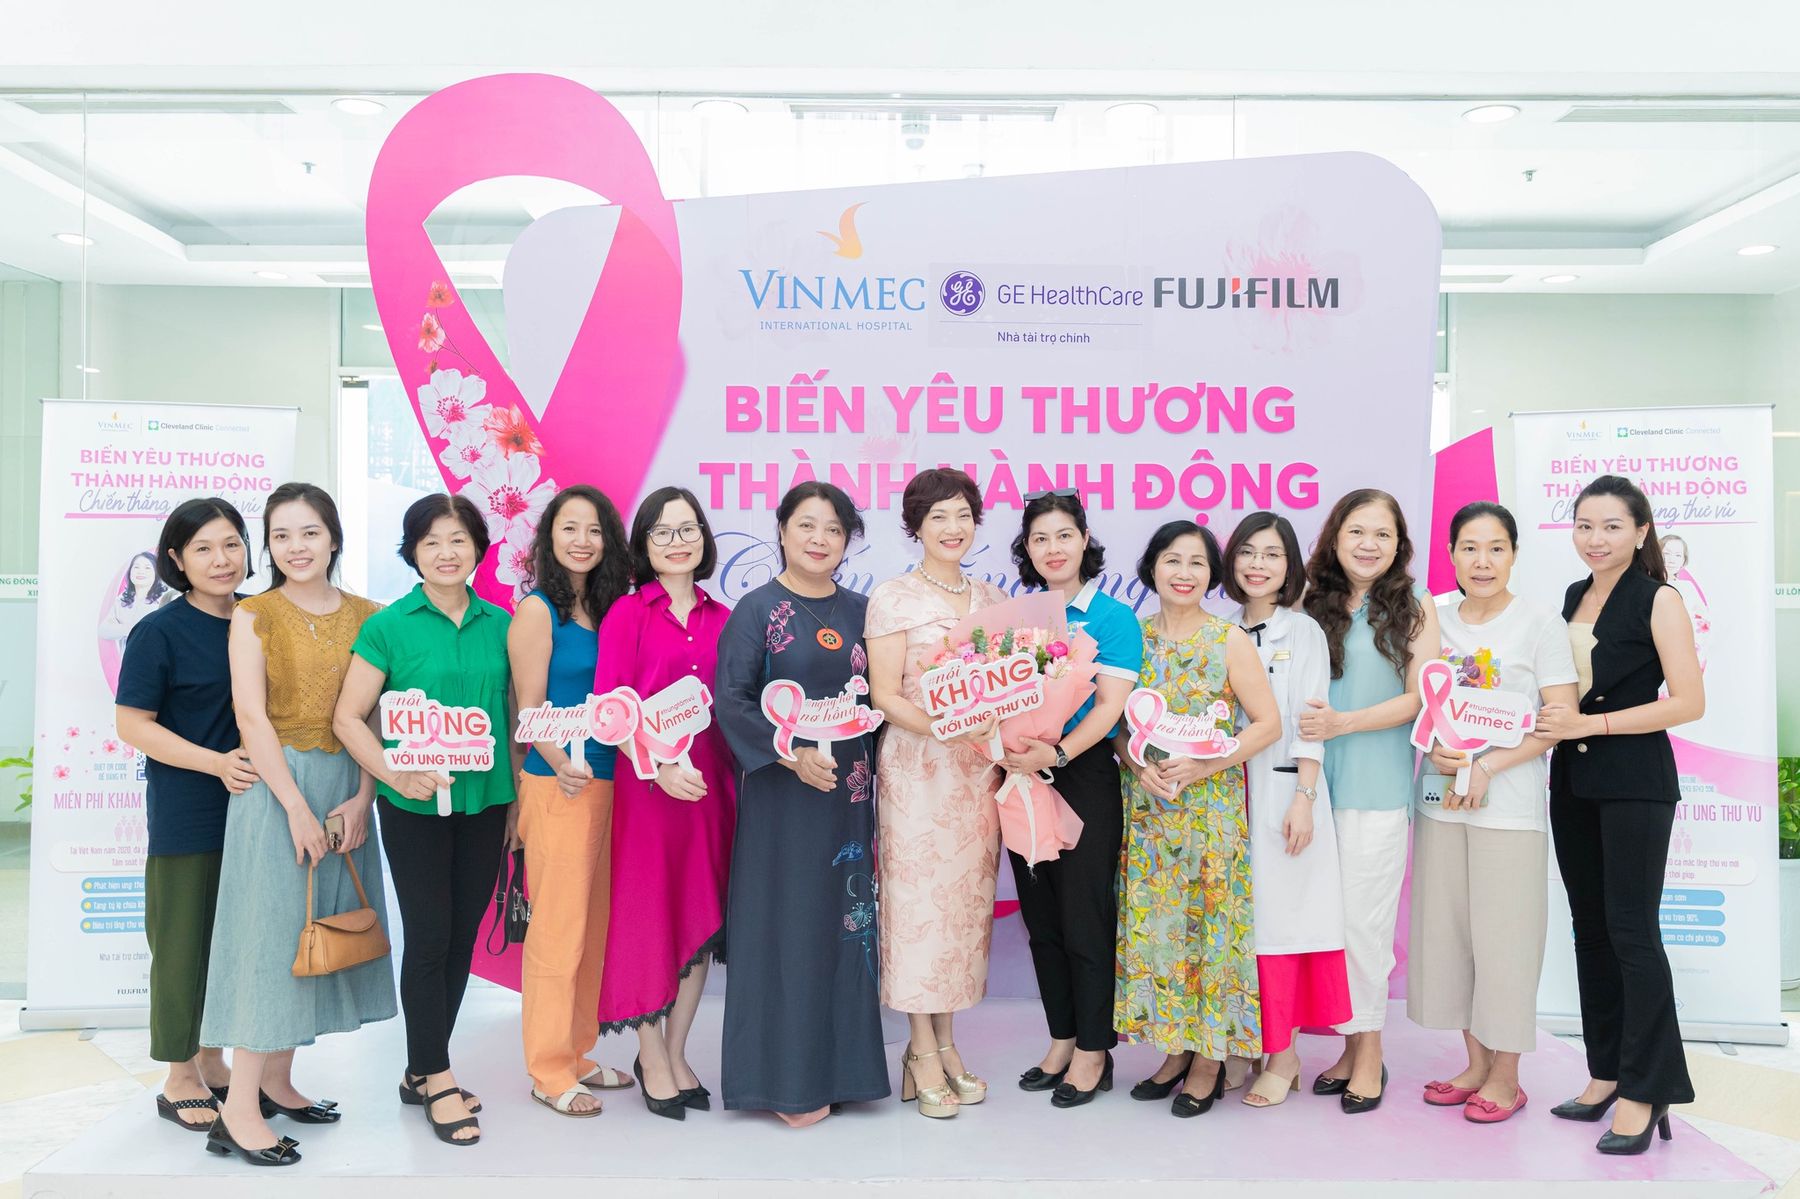 Mỗi người bà, người mẹ khi tham gia chiến dịch, sẽ có cơ hội tiếp cận các phương pháp sàng lọc ung thư vú hiện đại